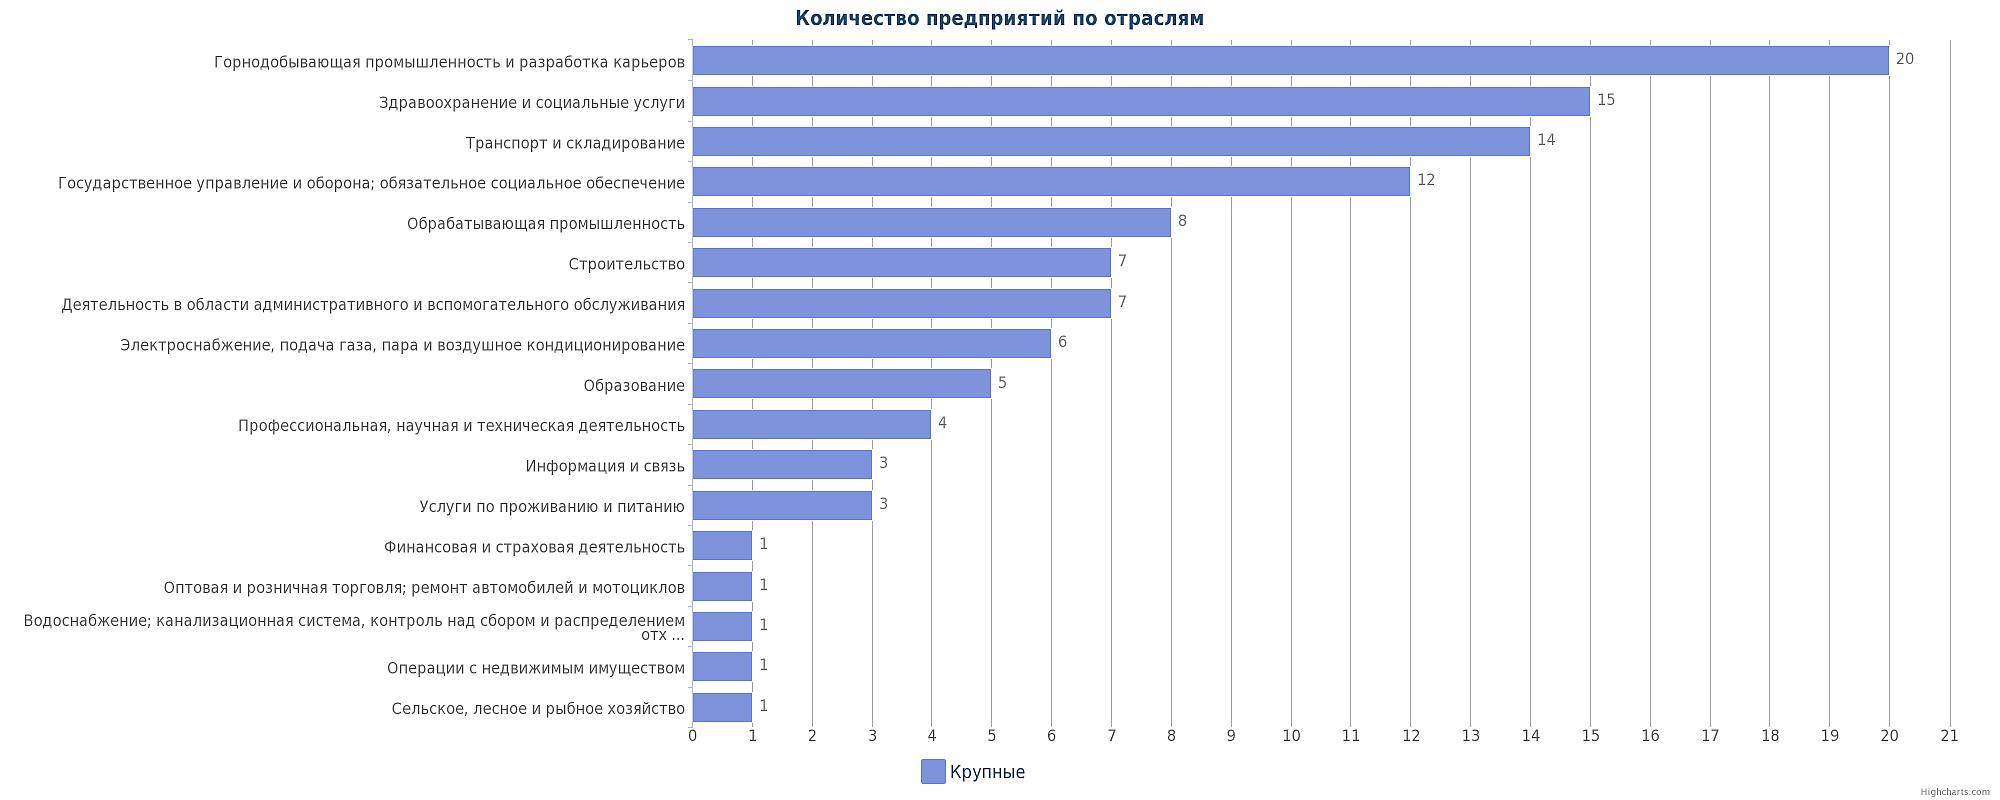 Крупные предприятия Казахстана по отраслям: Актау, Умирзак, Жанаозен, Мангистау, Бейнеу